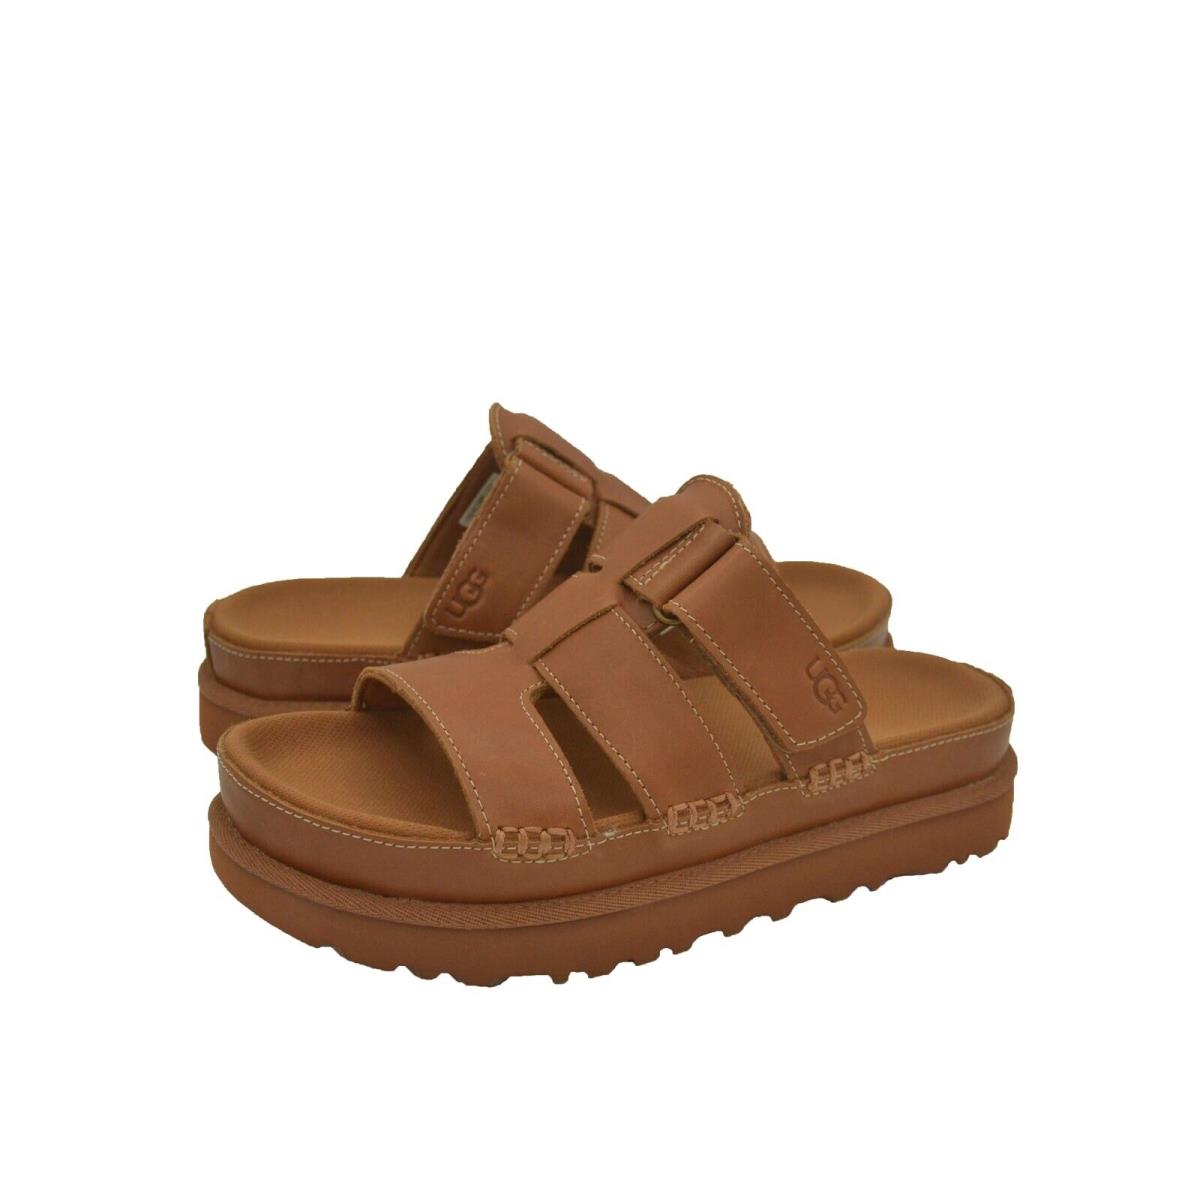 Women`s Shoes Ugg Goldenstar Slide Leather Sandals 1154652 Tan